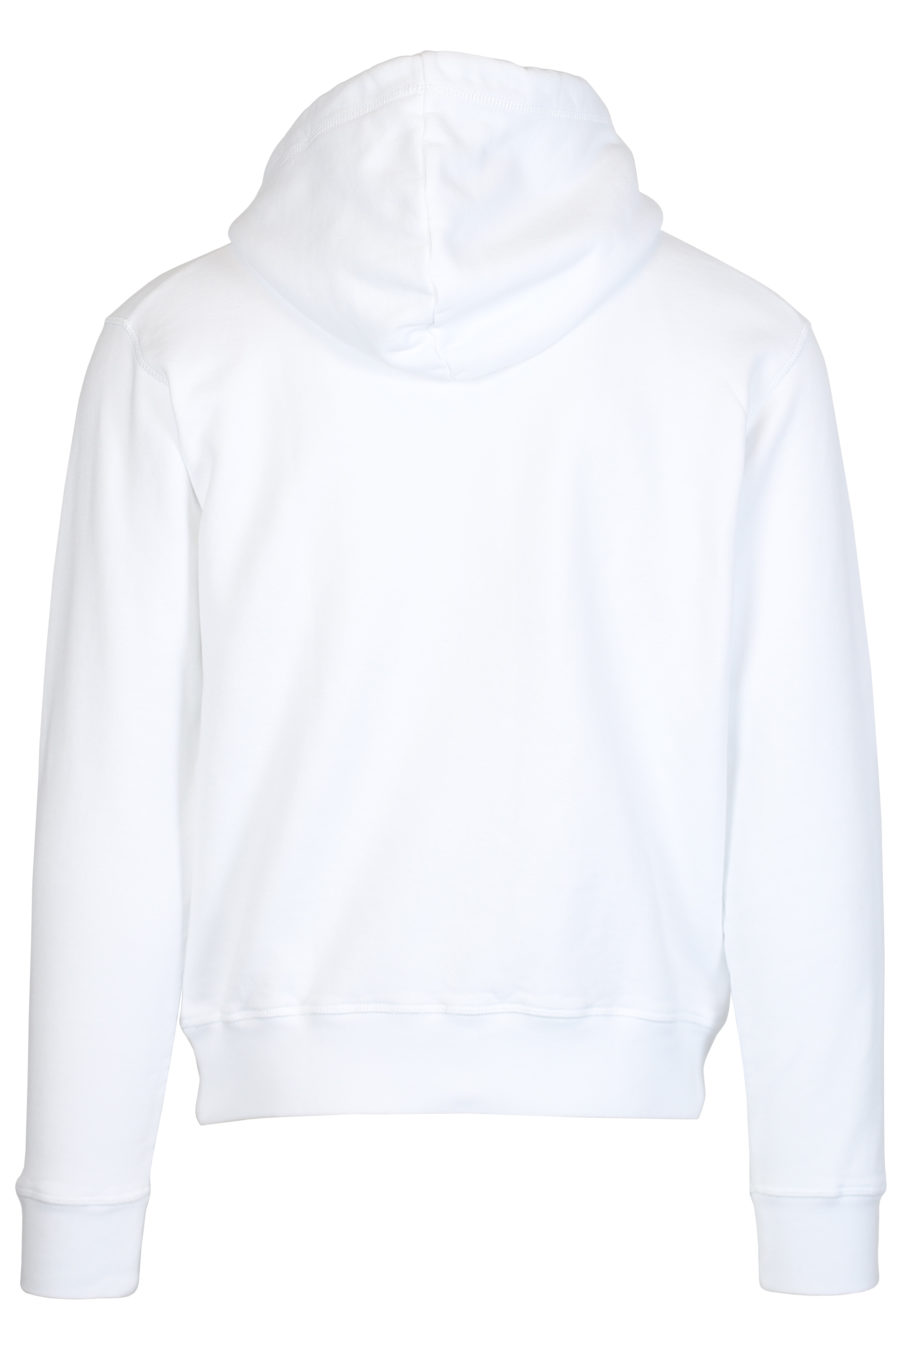 Weißes Kapuzensweatshirt mit kleinem Logo "Ceresio 9" - IMG 2467 1